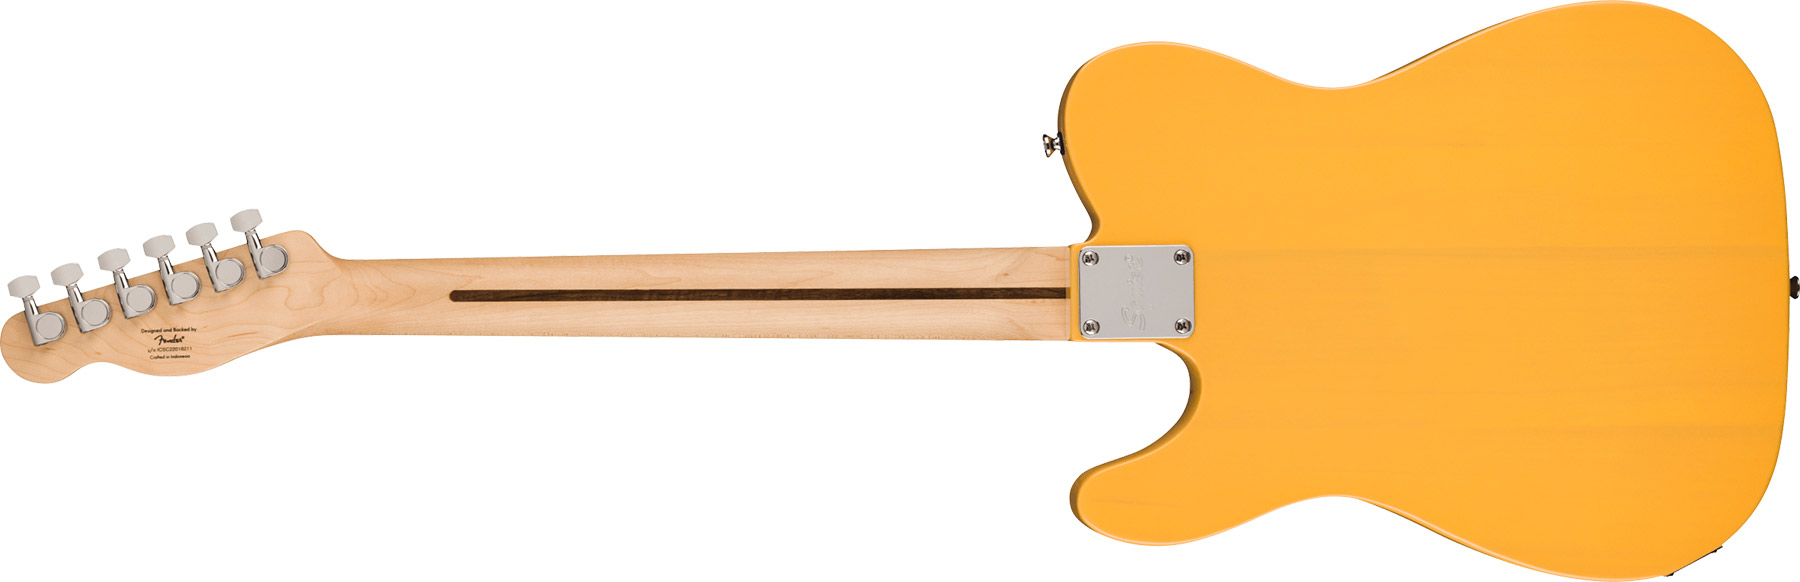 Squier Tele Sonic 2s Ht Mn - Butterscotch Blonde - Guitarra eléctrica con forma de tel - Variation 1